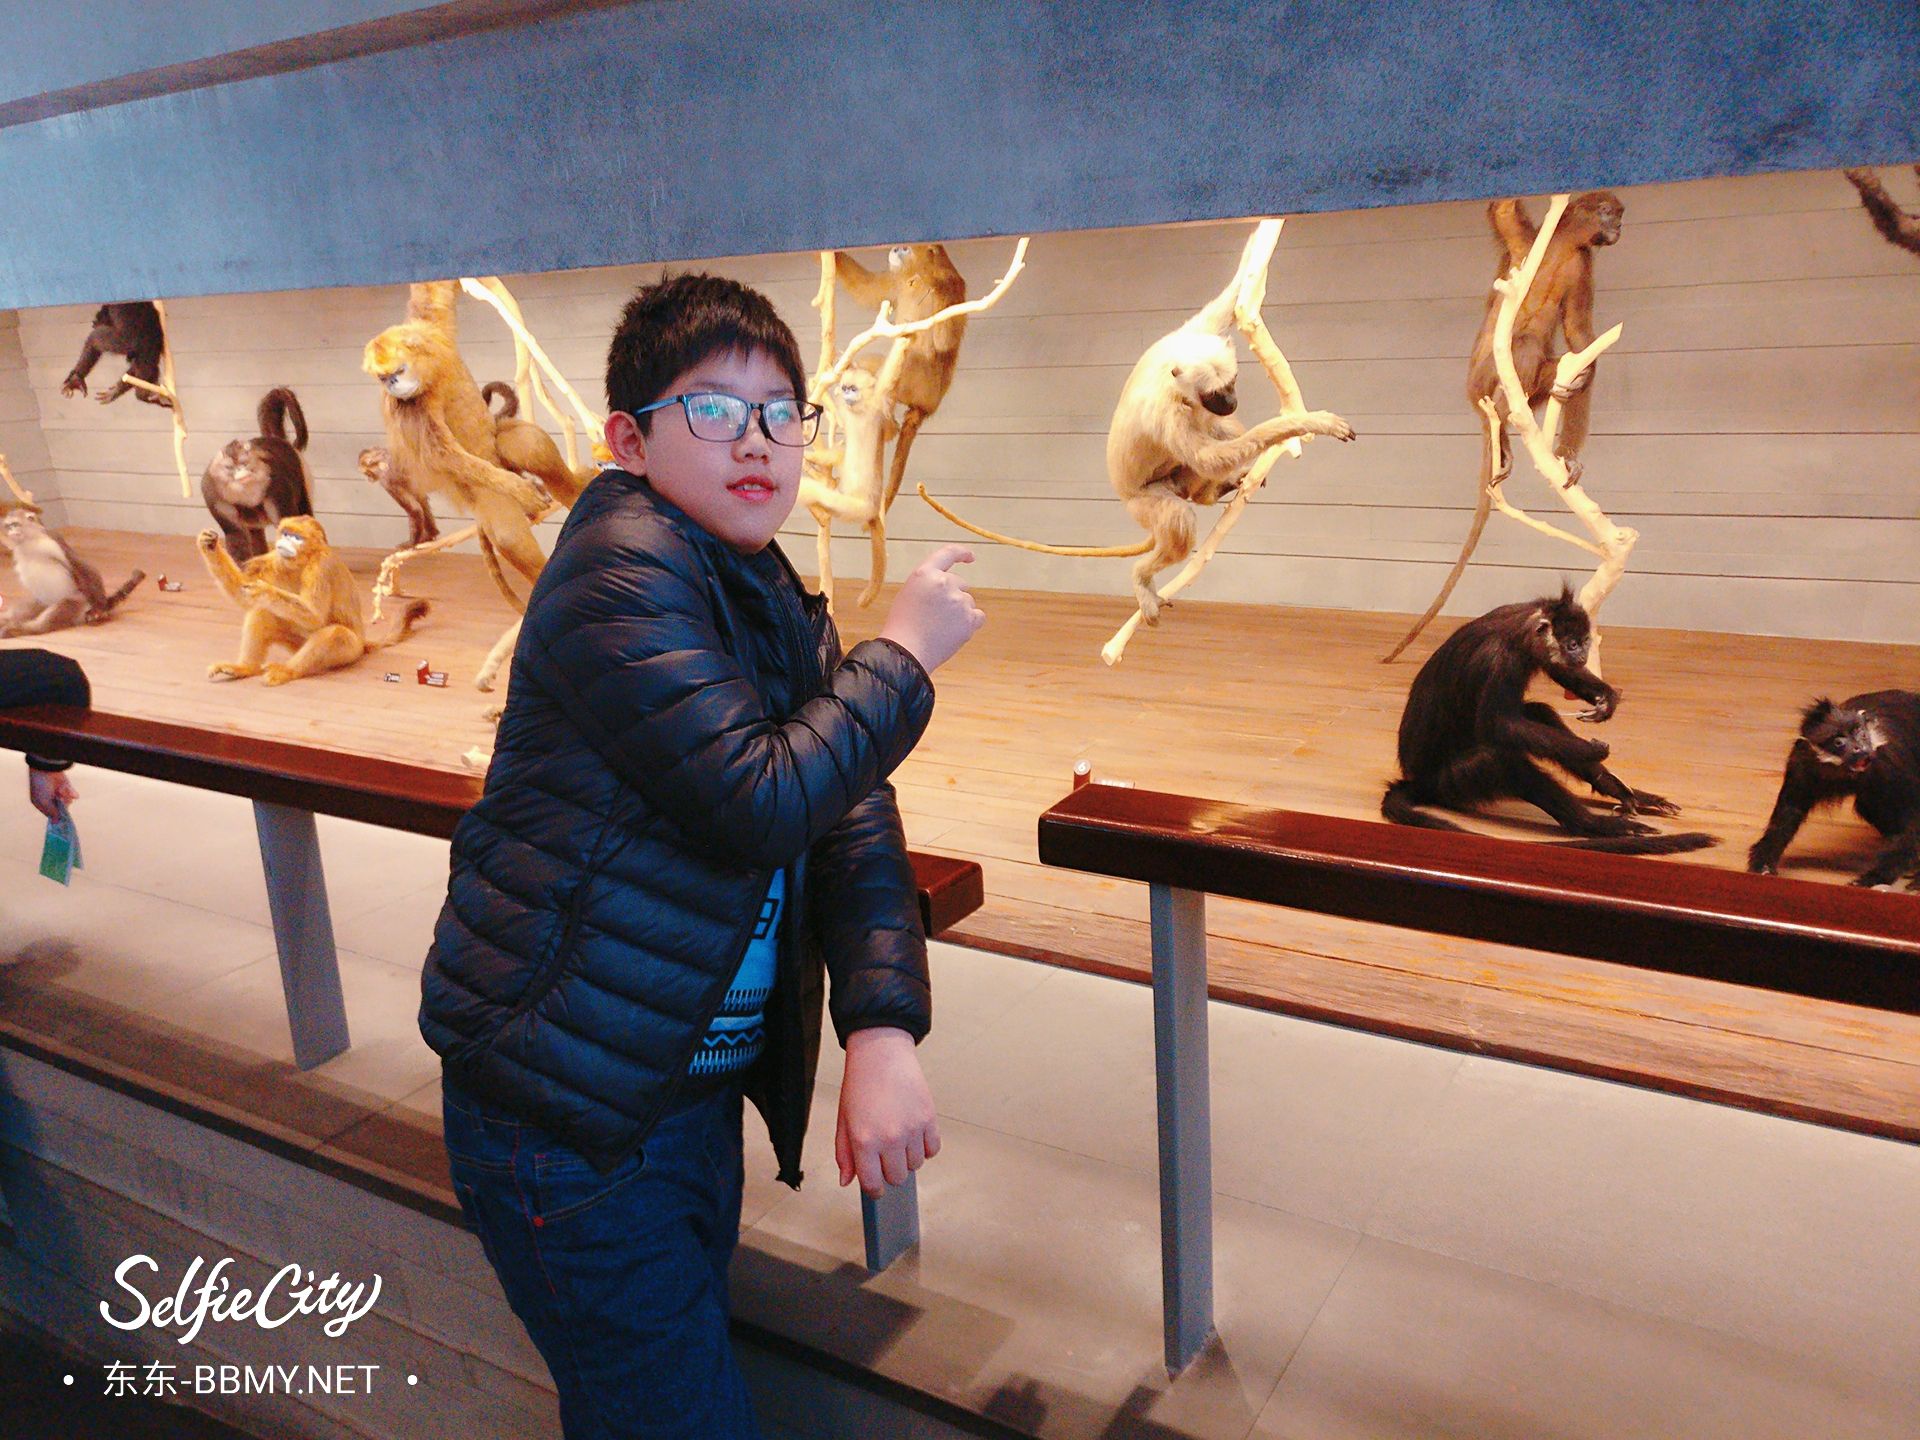 金东浩成长日记上海游记之上海自然博物馆照片SelfieCity_20210922225920_org.jpg